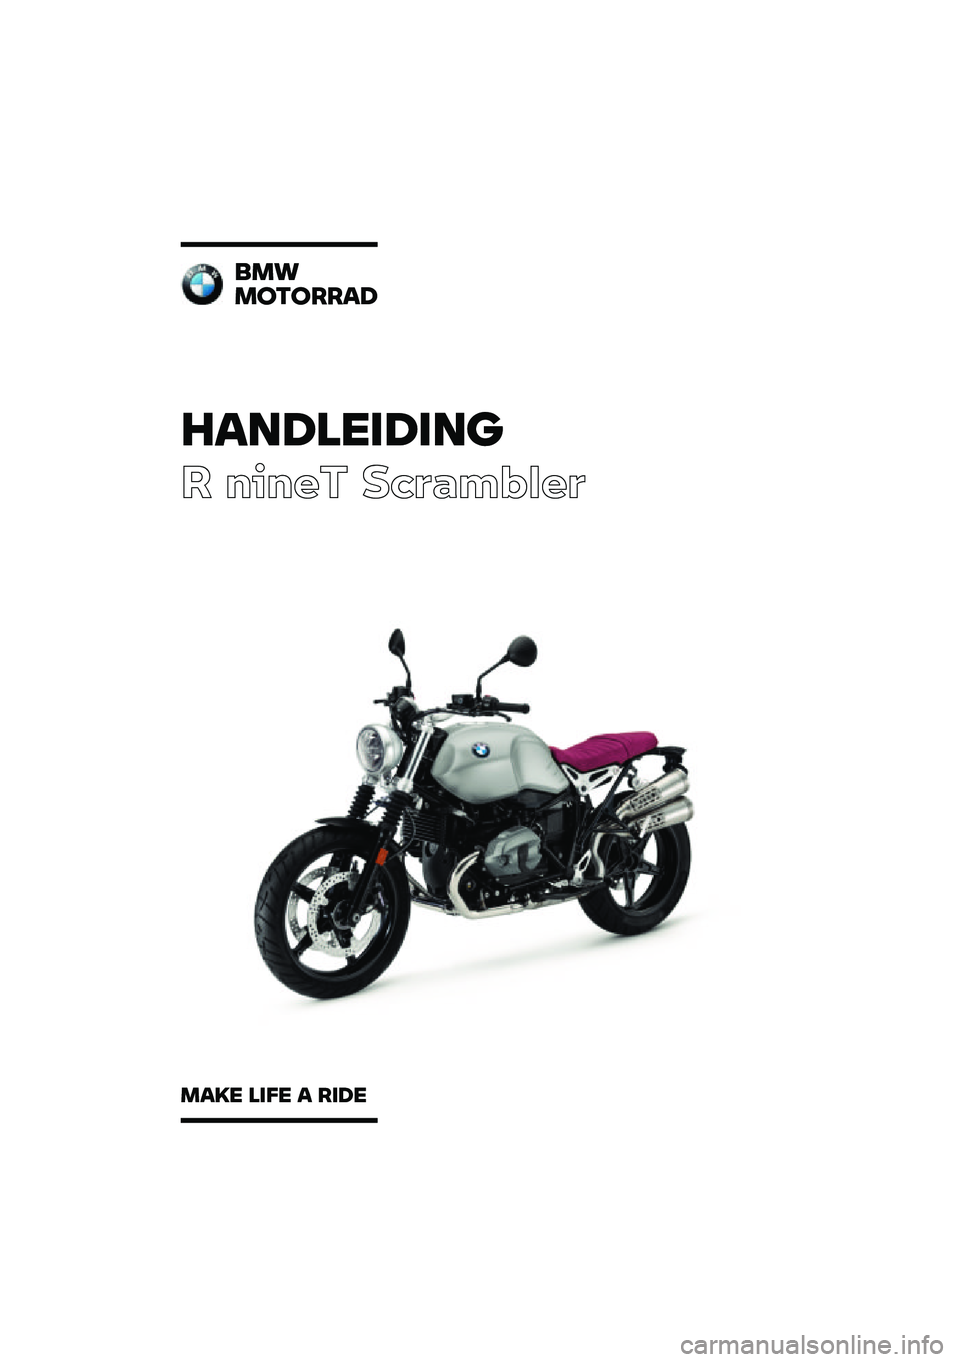 BMW MOTORRAD R NINE T SCRAMBLER 2020  Handleiding (in Dutch) �������\b��\b��	
� ����� ��\b�	�
��\f�
��	
�
��\f
��
��
����
���� ��\b�� � ��\b�� 